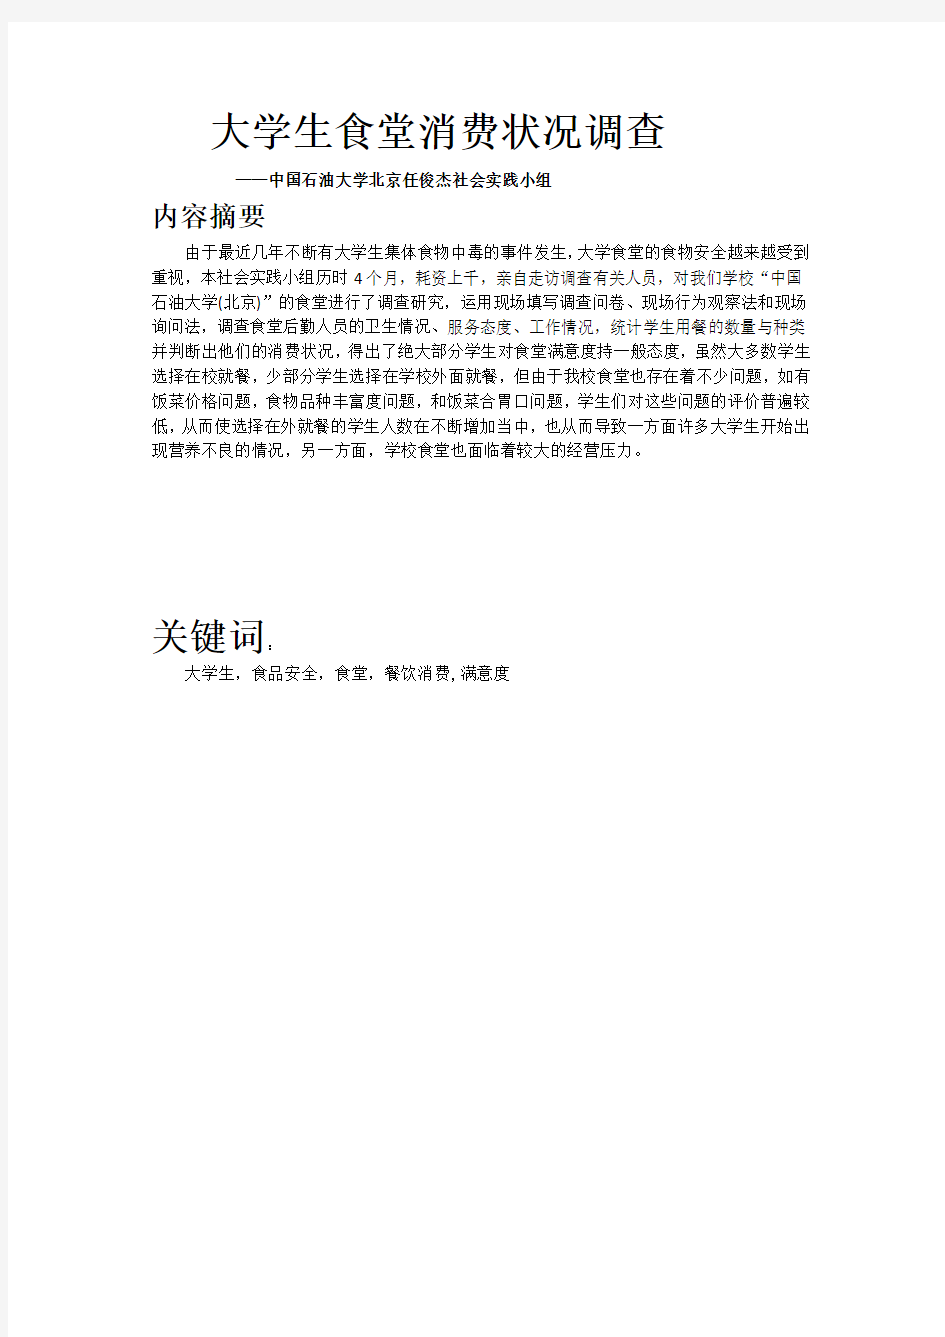 思修作业：中国石油大学北京大学生食堂消费状况调查(任俊杰小组)